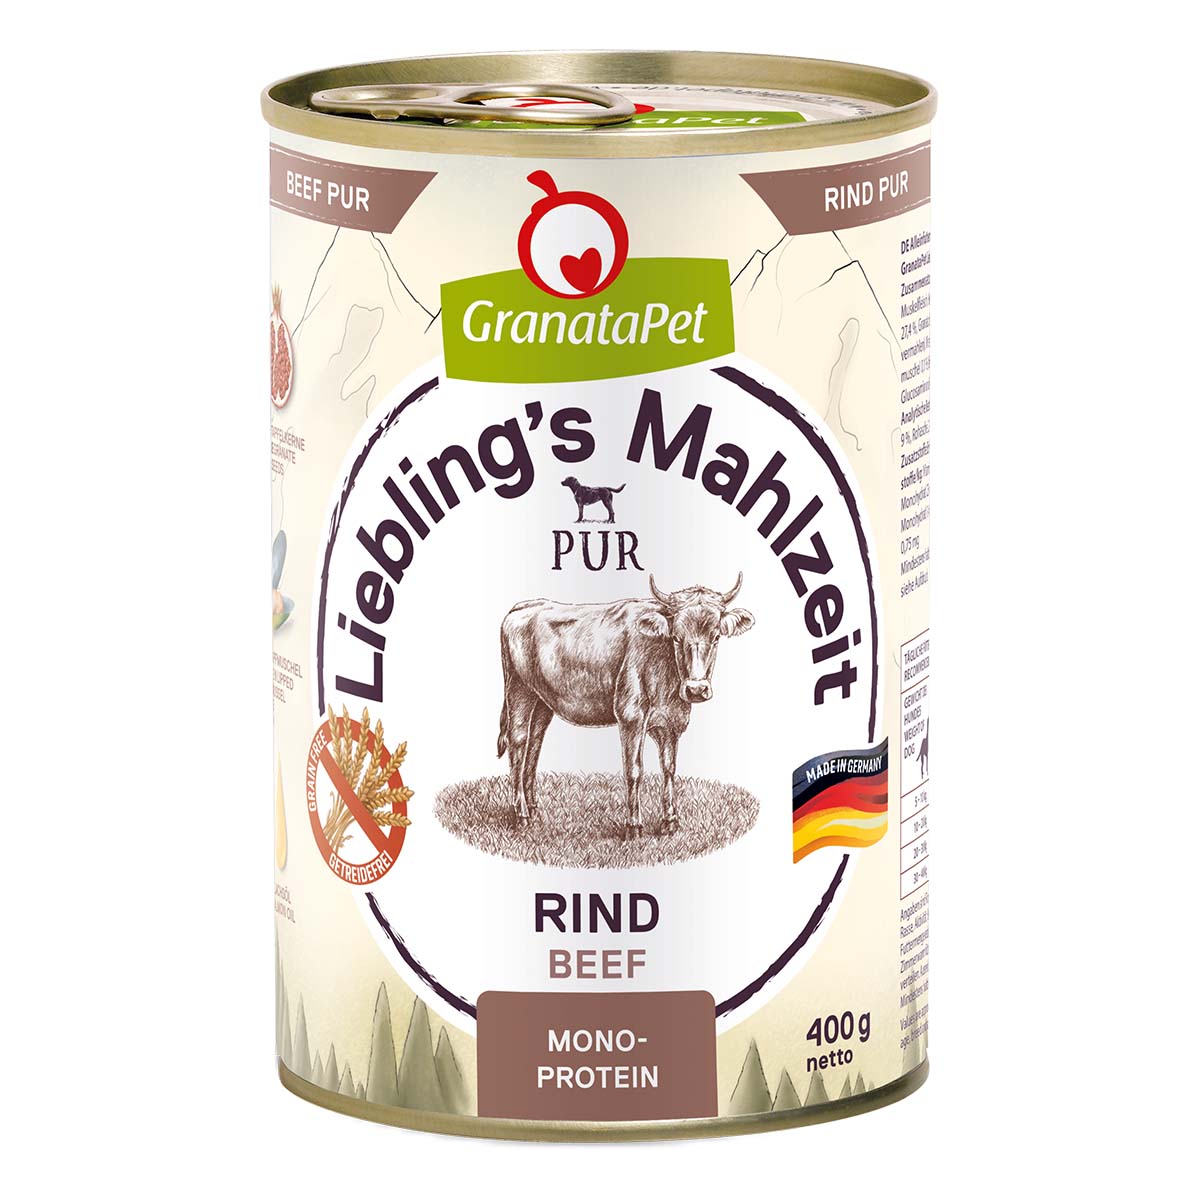 GranataPet Liebling’s Mahlzeit Rind PUR 6x400g von Granatapet